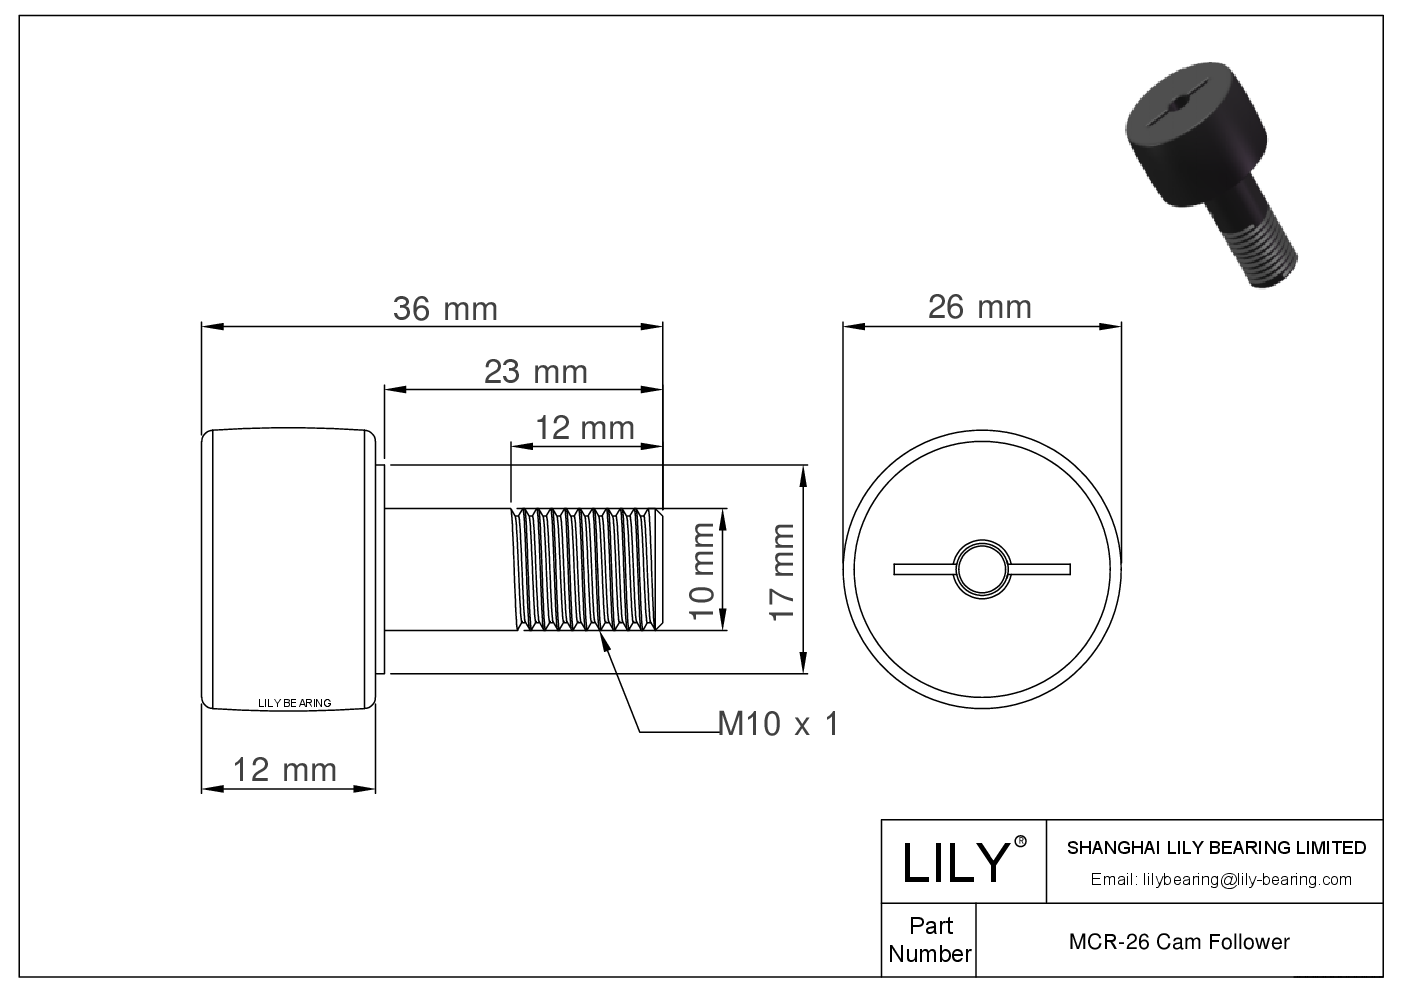 MCR-26 Stud Style Metric Cam Followers CAD图形